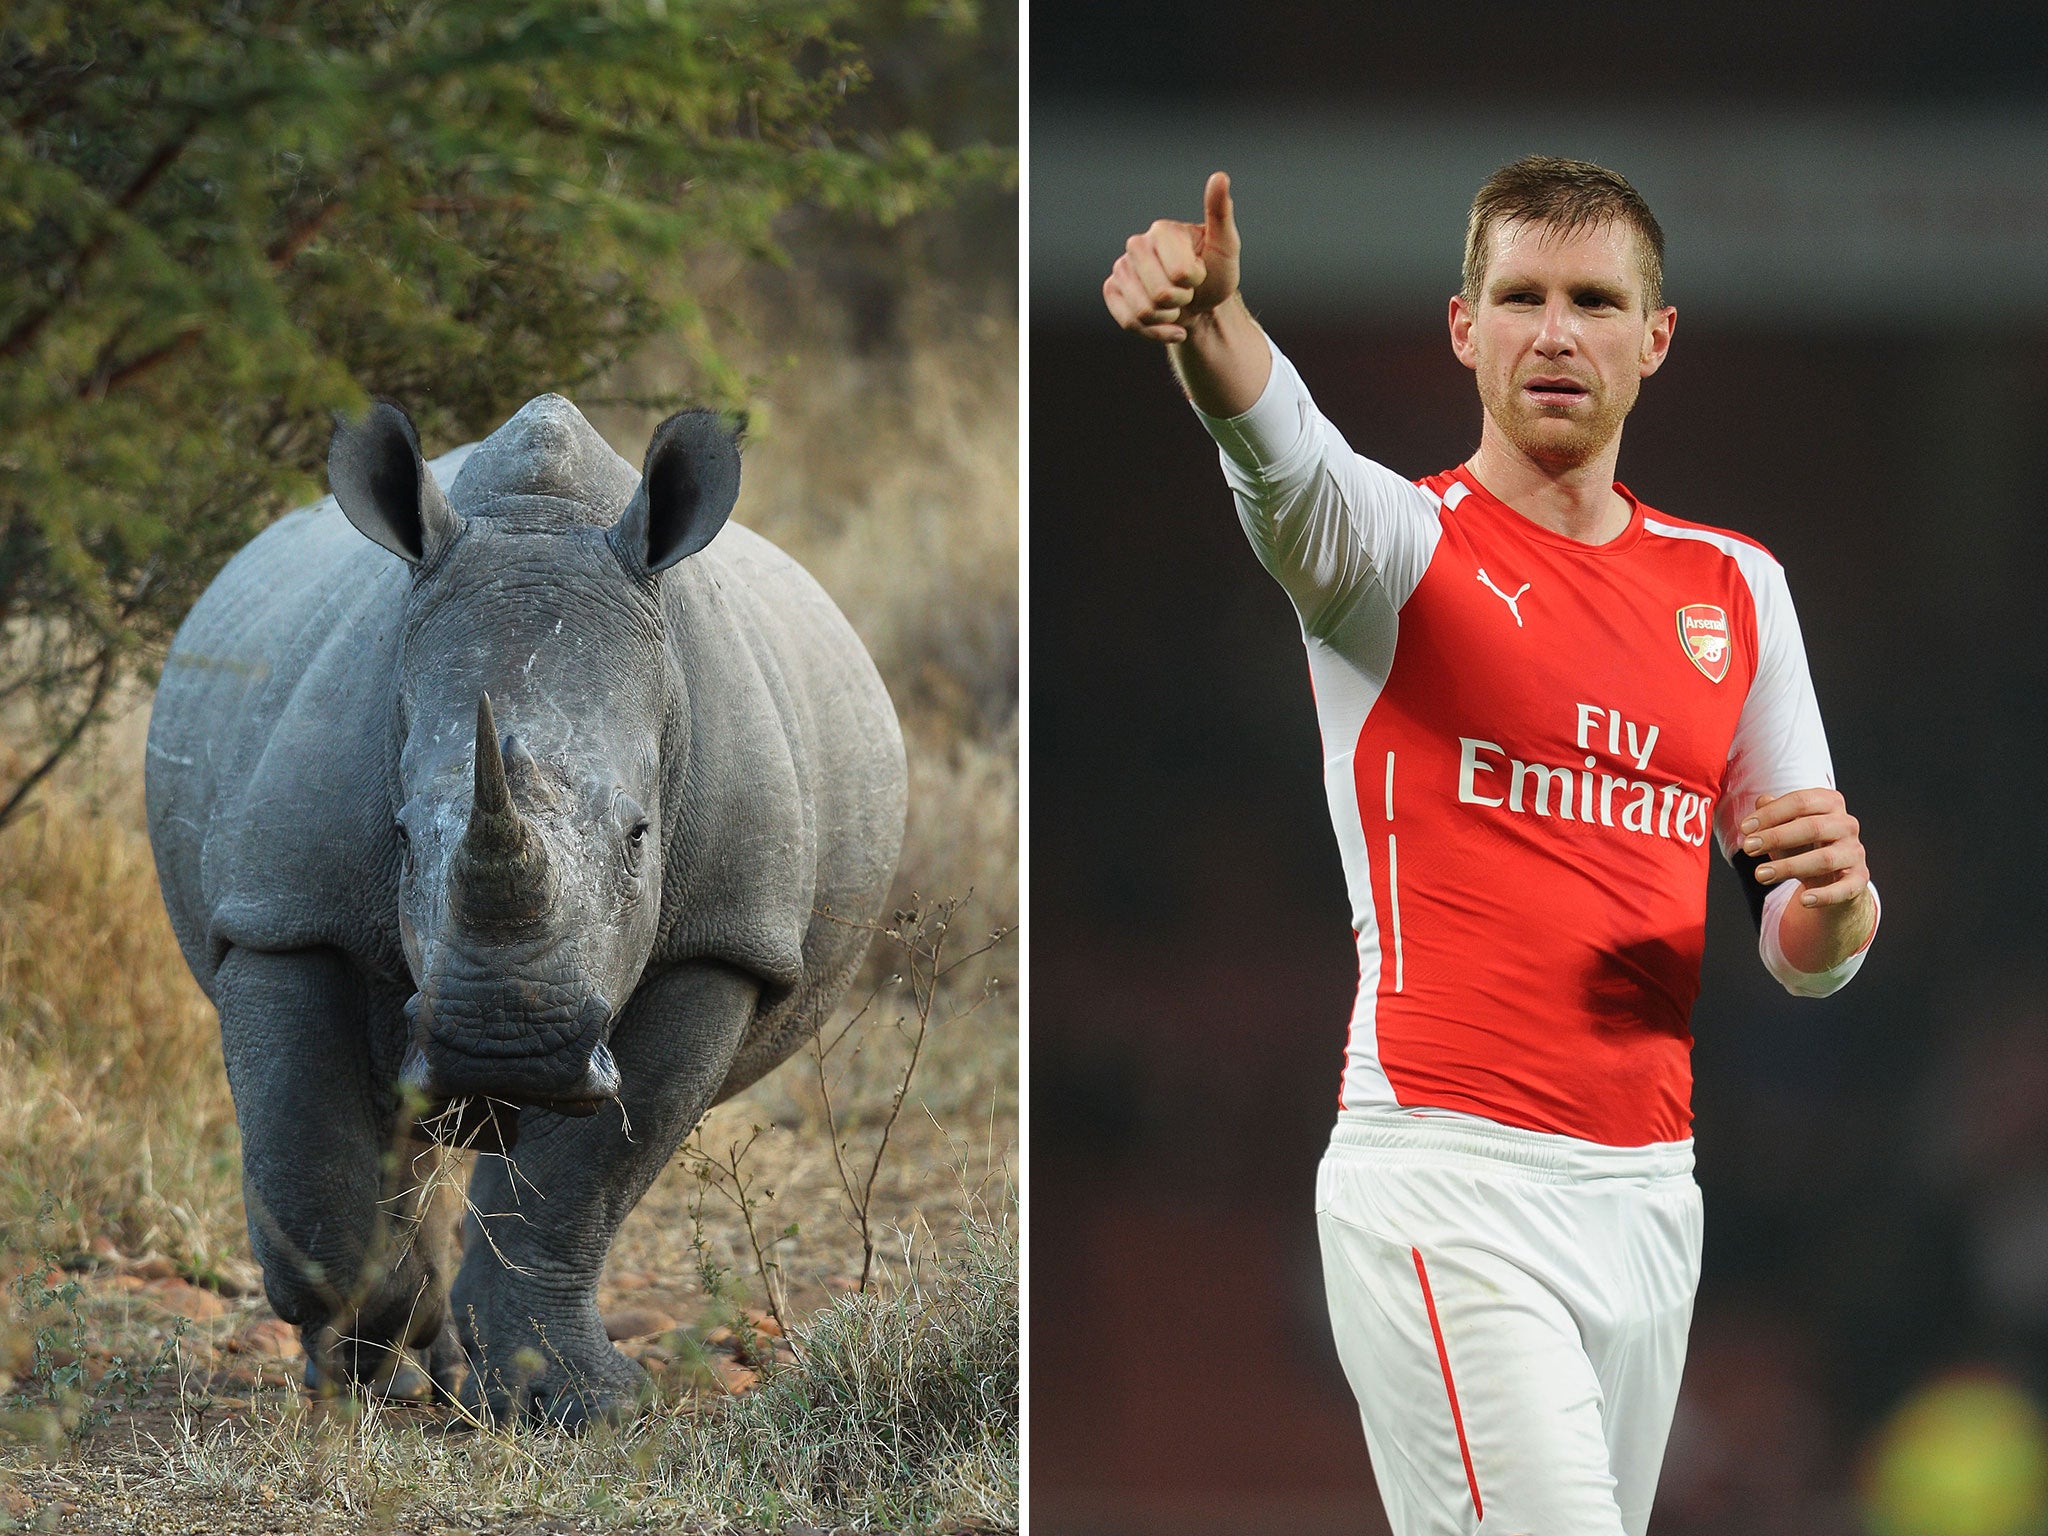 Wojciech Szczesny's father compared Per Mertesacker's agility to that of a rhino